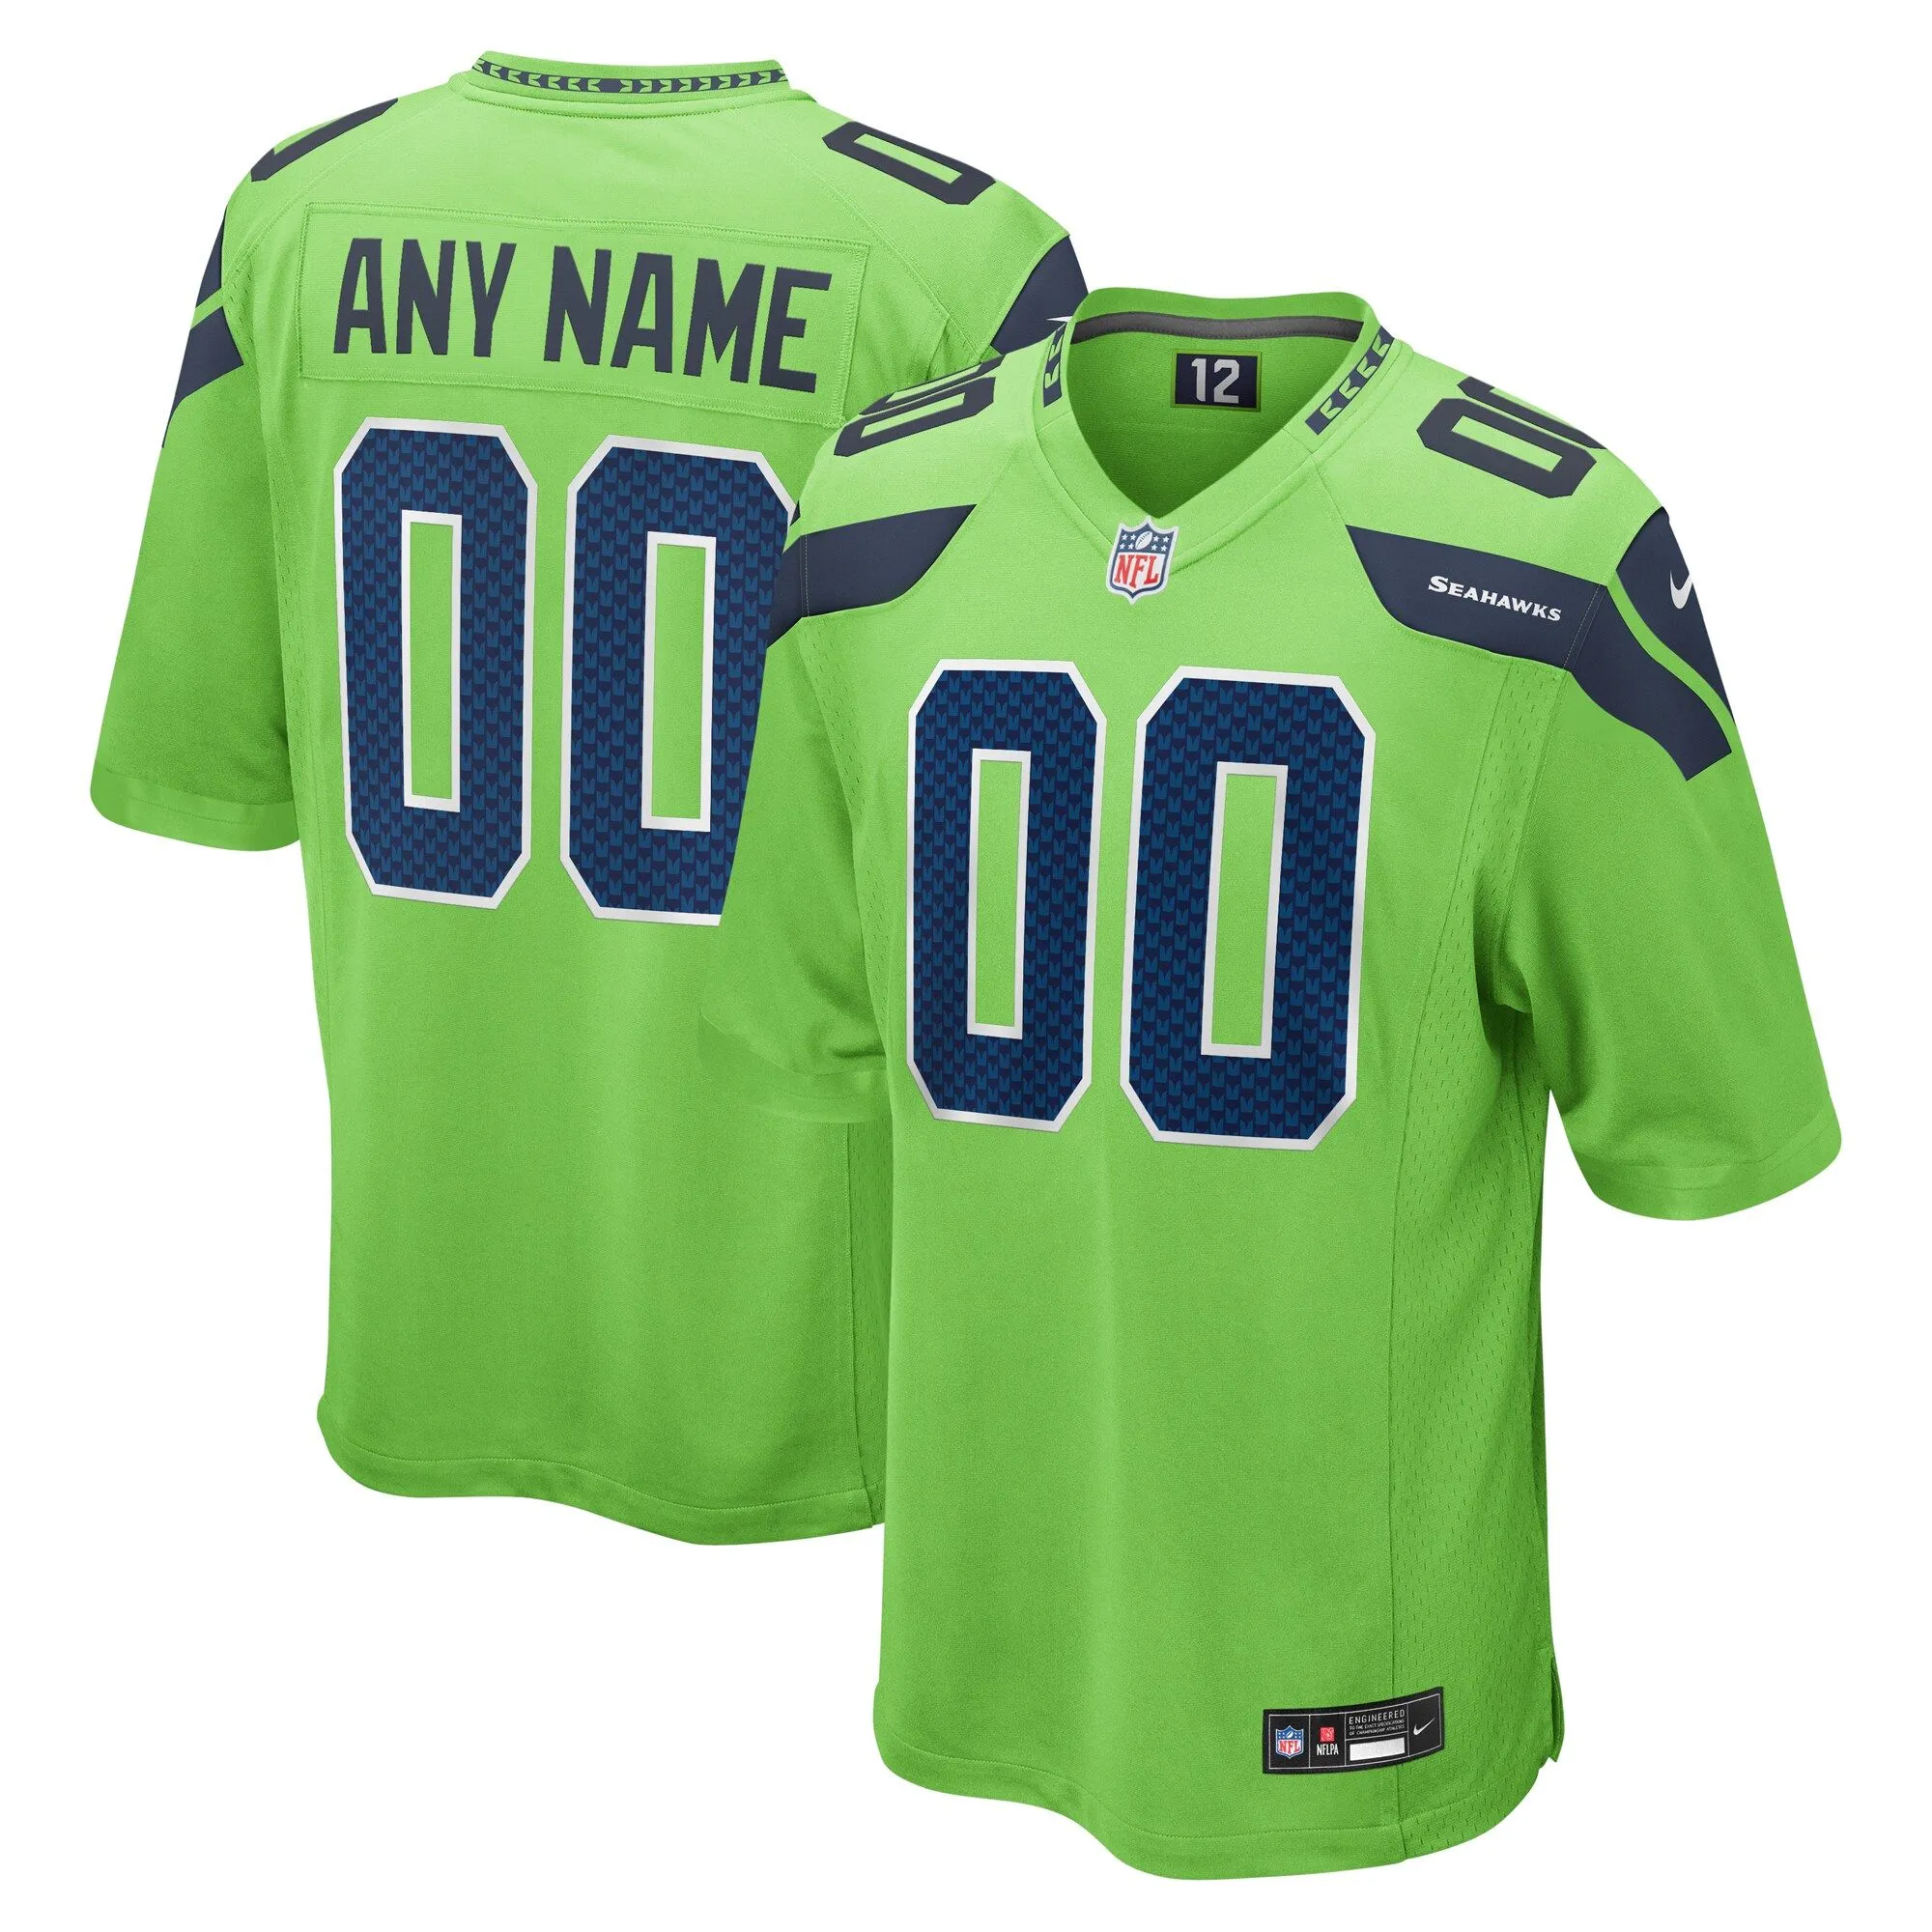 Seattle Seahawks  Alternate Custom Game Jersey - Neon Green